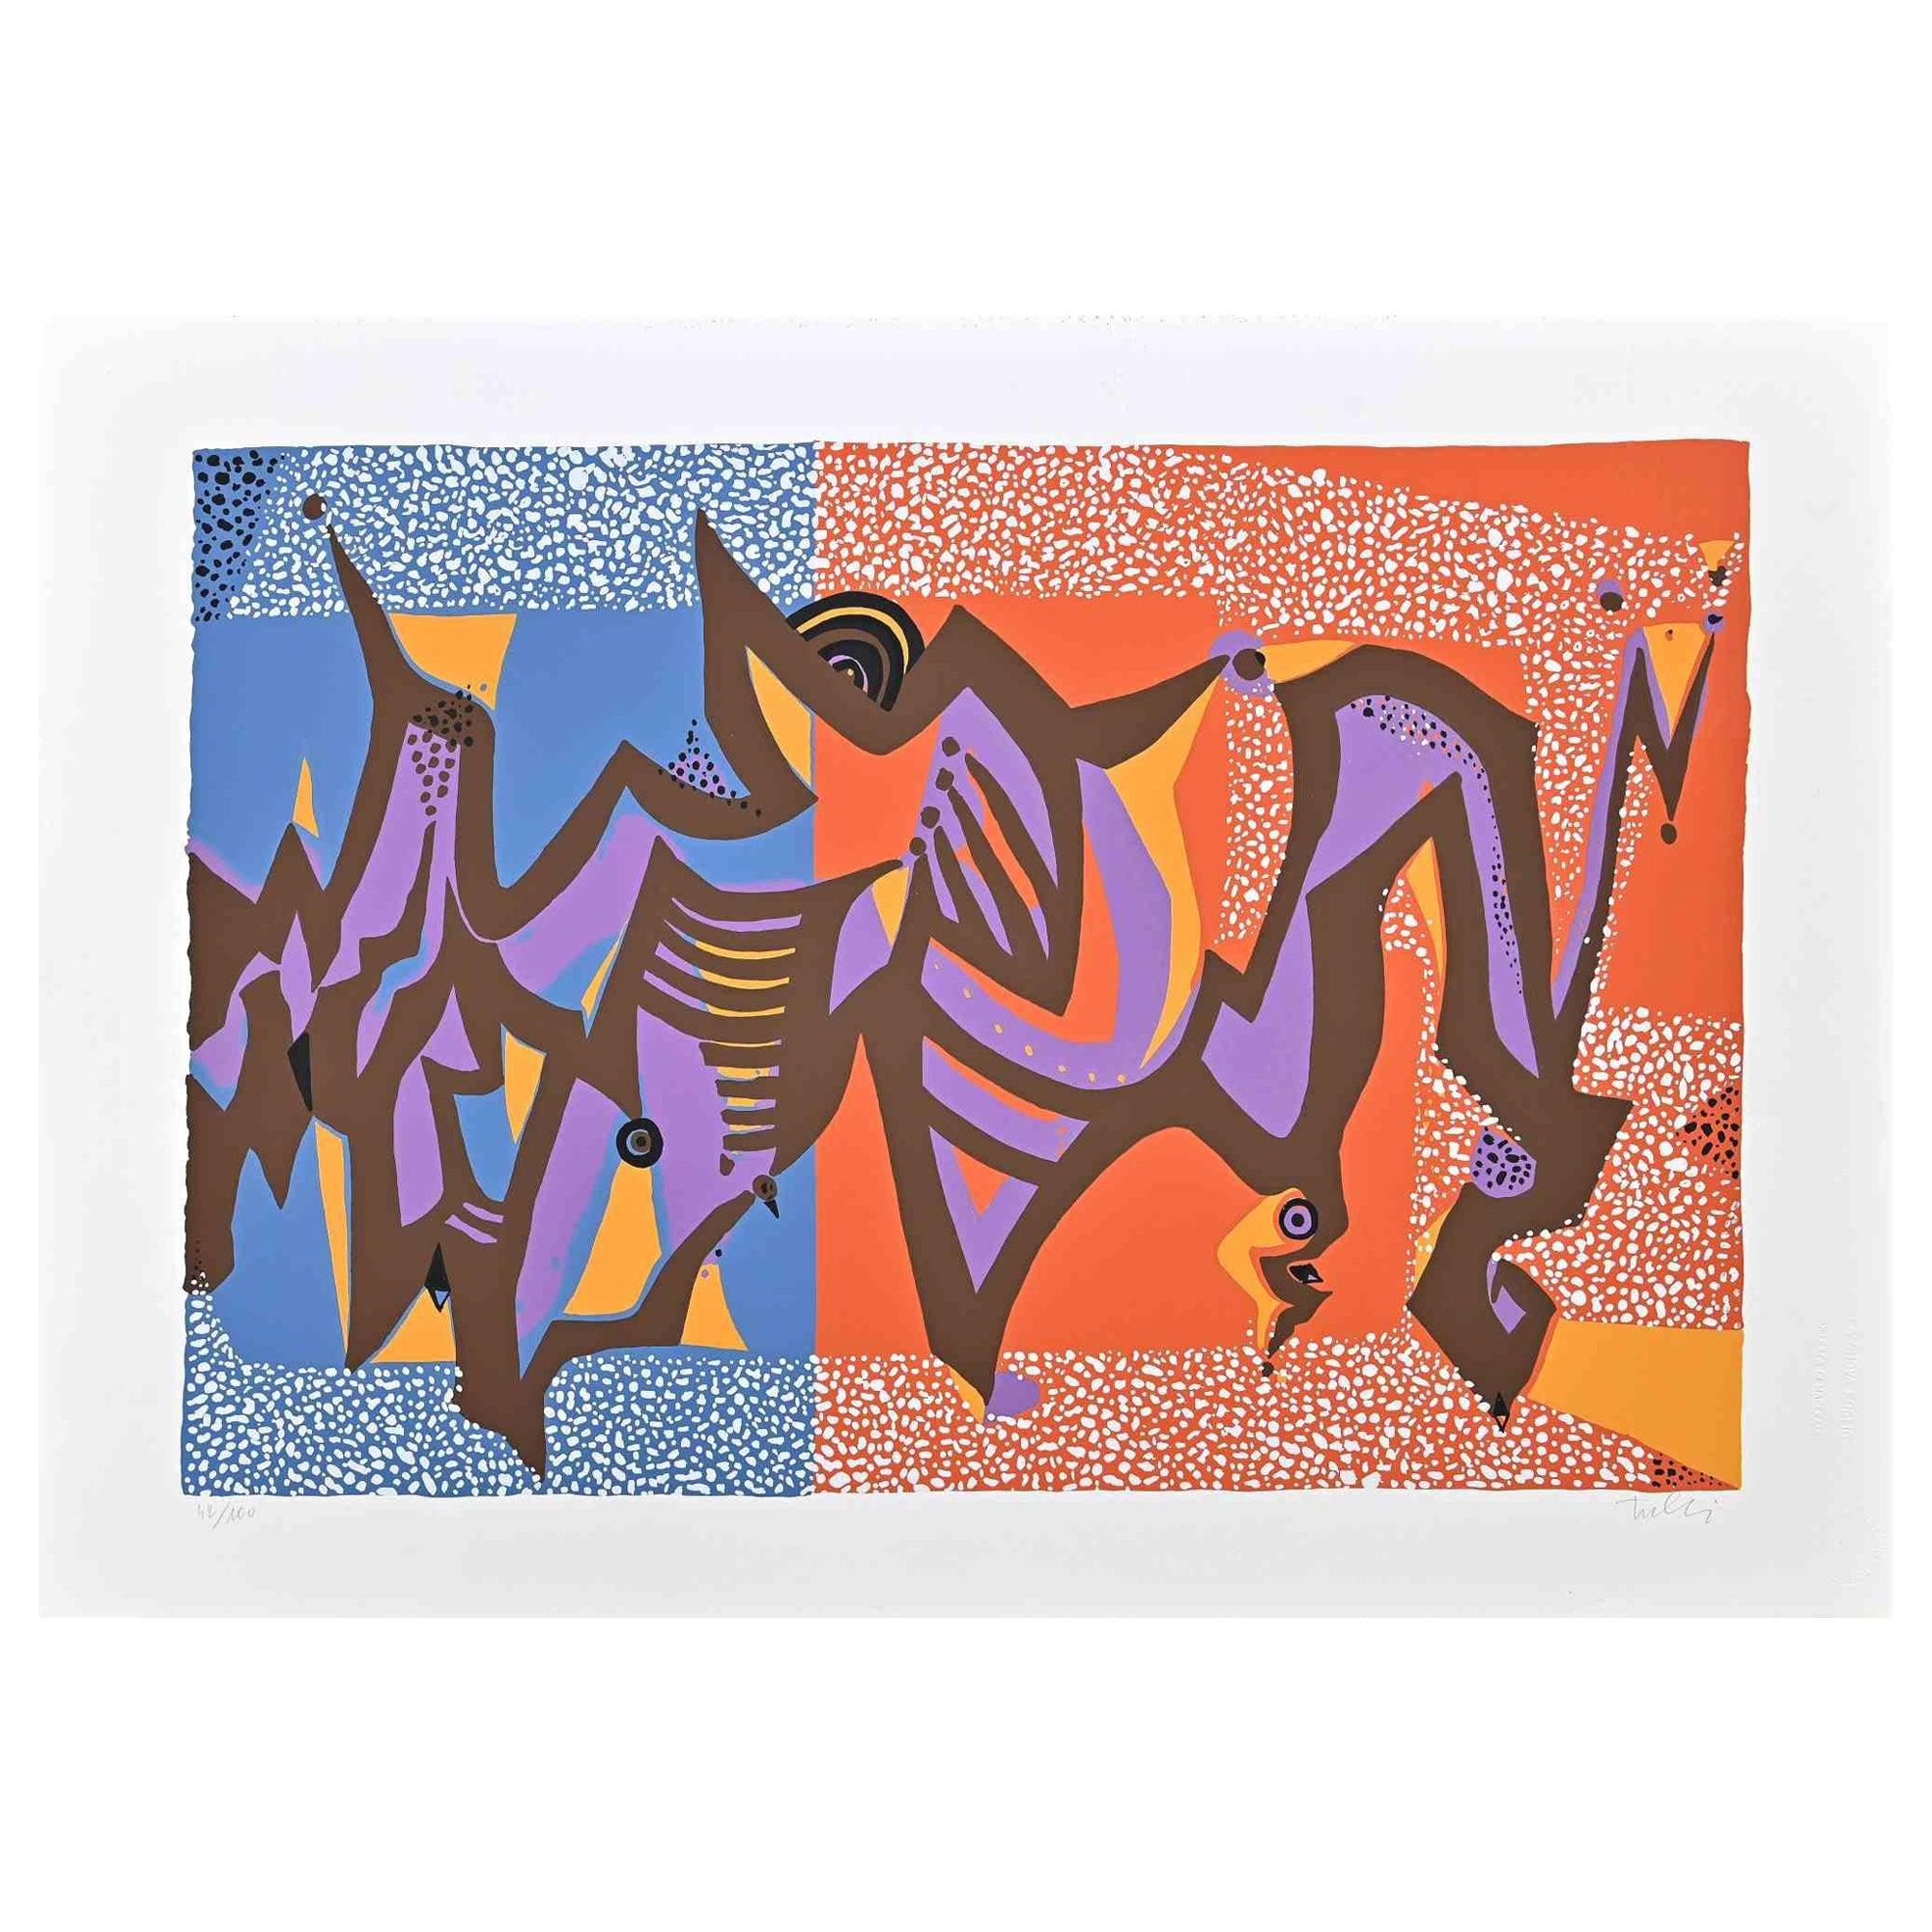 Carnivalesque composition ist ein farbiger Siebdruck auf Papier, der in den 1970er Jahren von dem italienischen Künstler Wladimiro Tulli realisiert wurde.
Rechts unten handsigniert und am unteren Rand mit Bleistift nummeriert. Auflage: 42/100